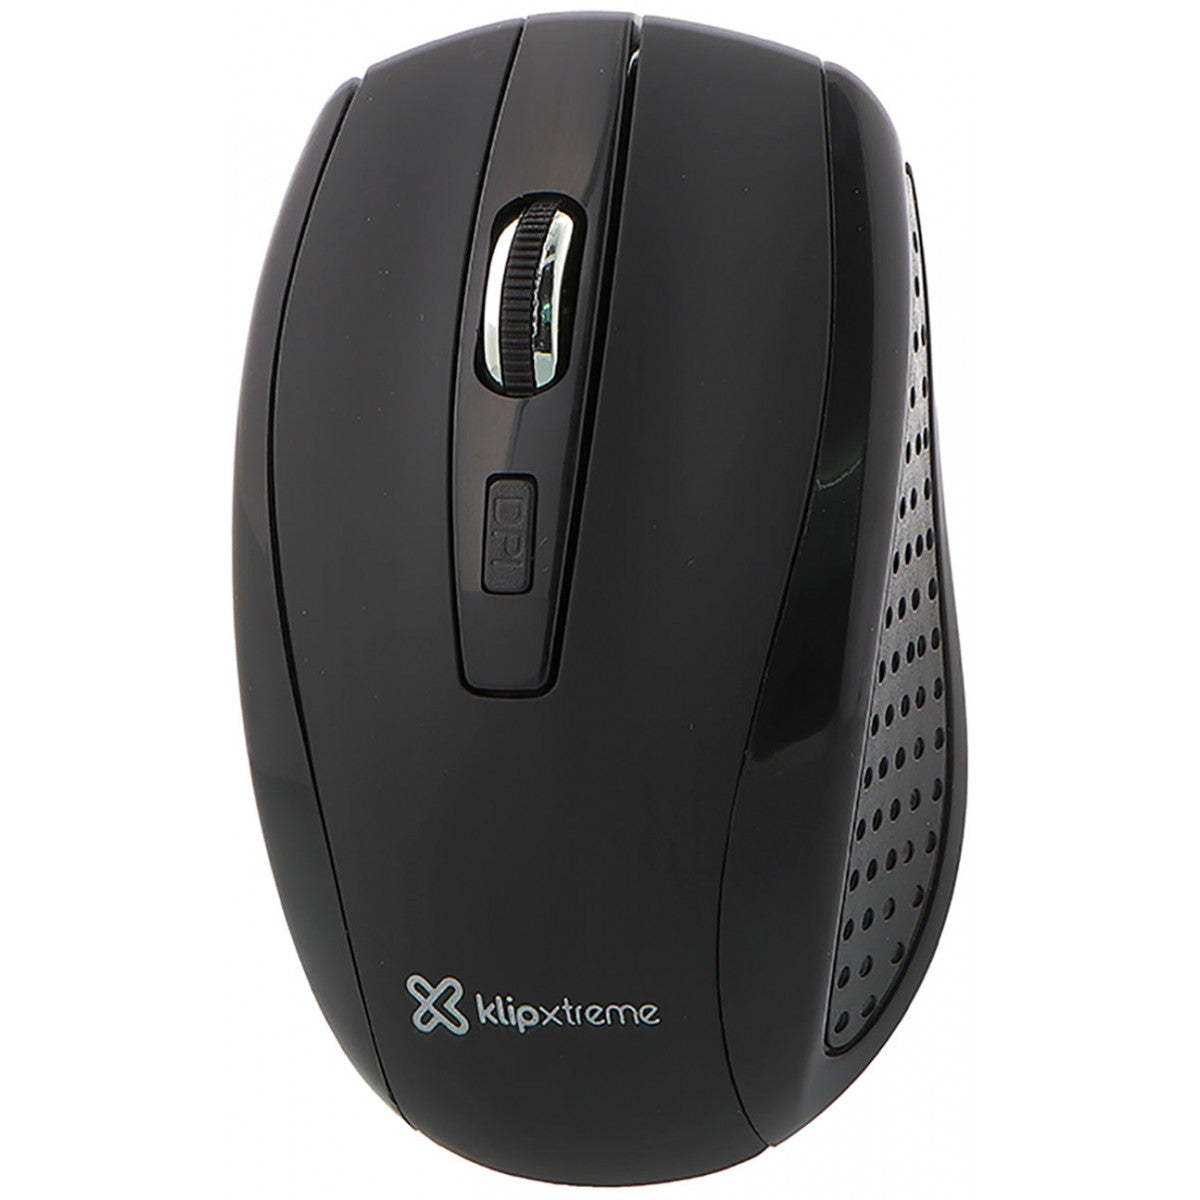 Klip Xtreme Mouse KMW-340